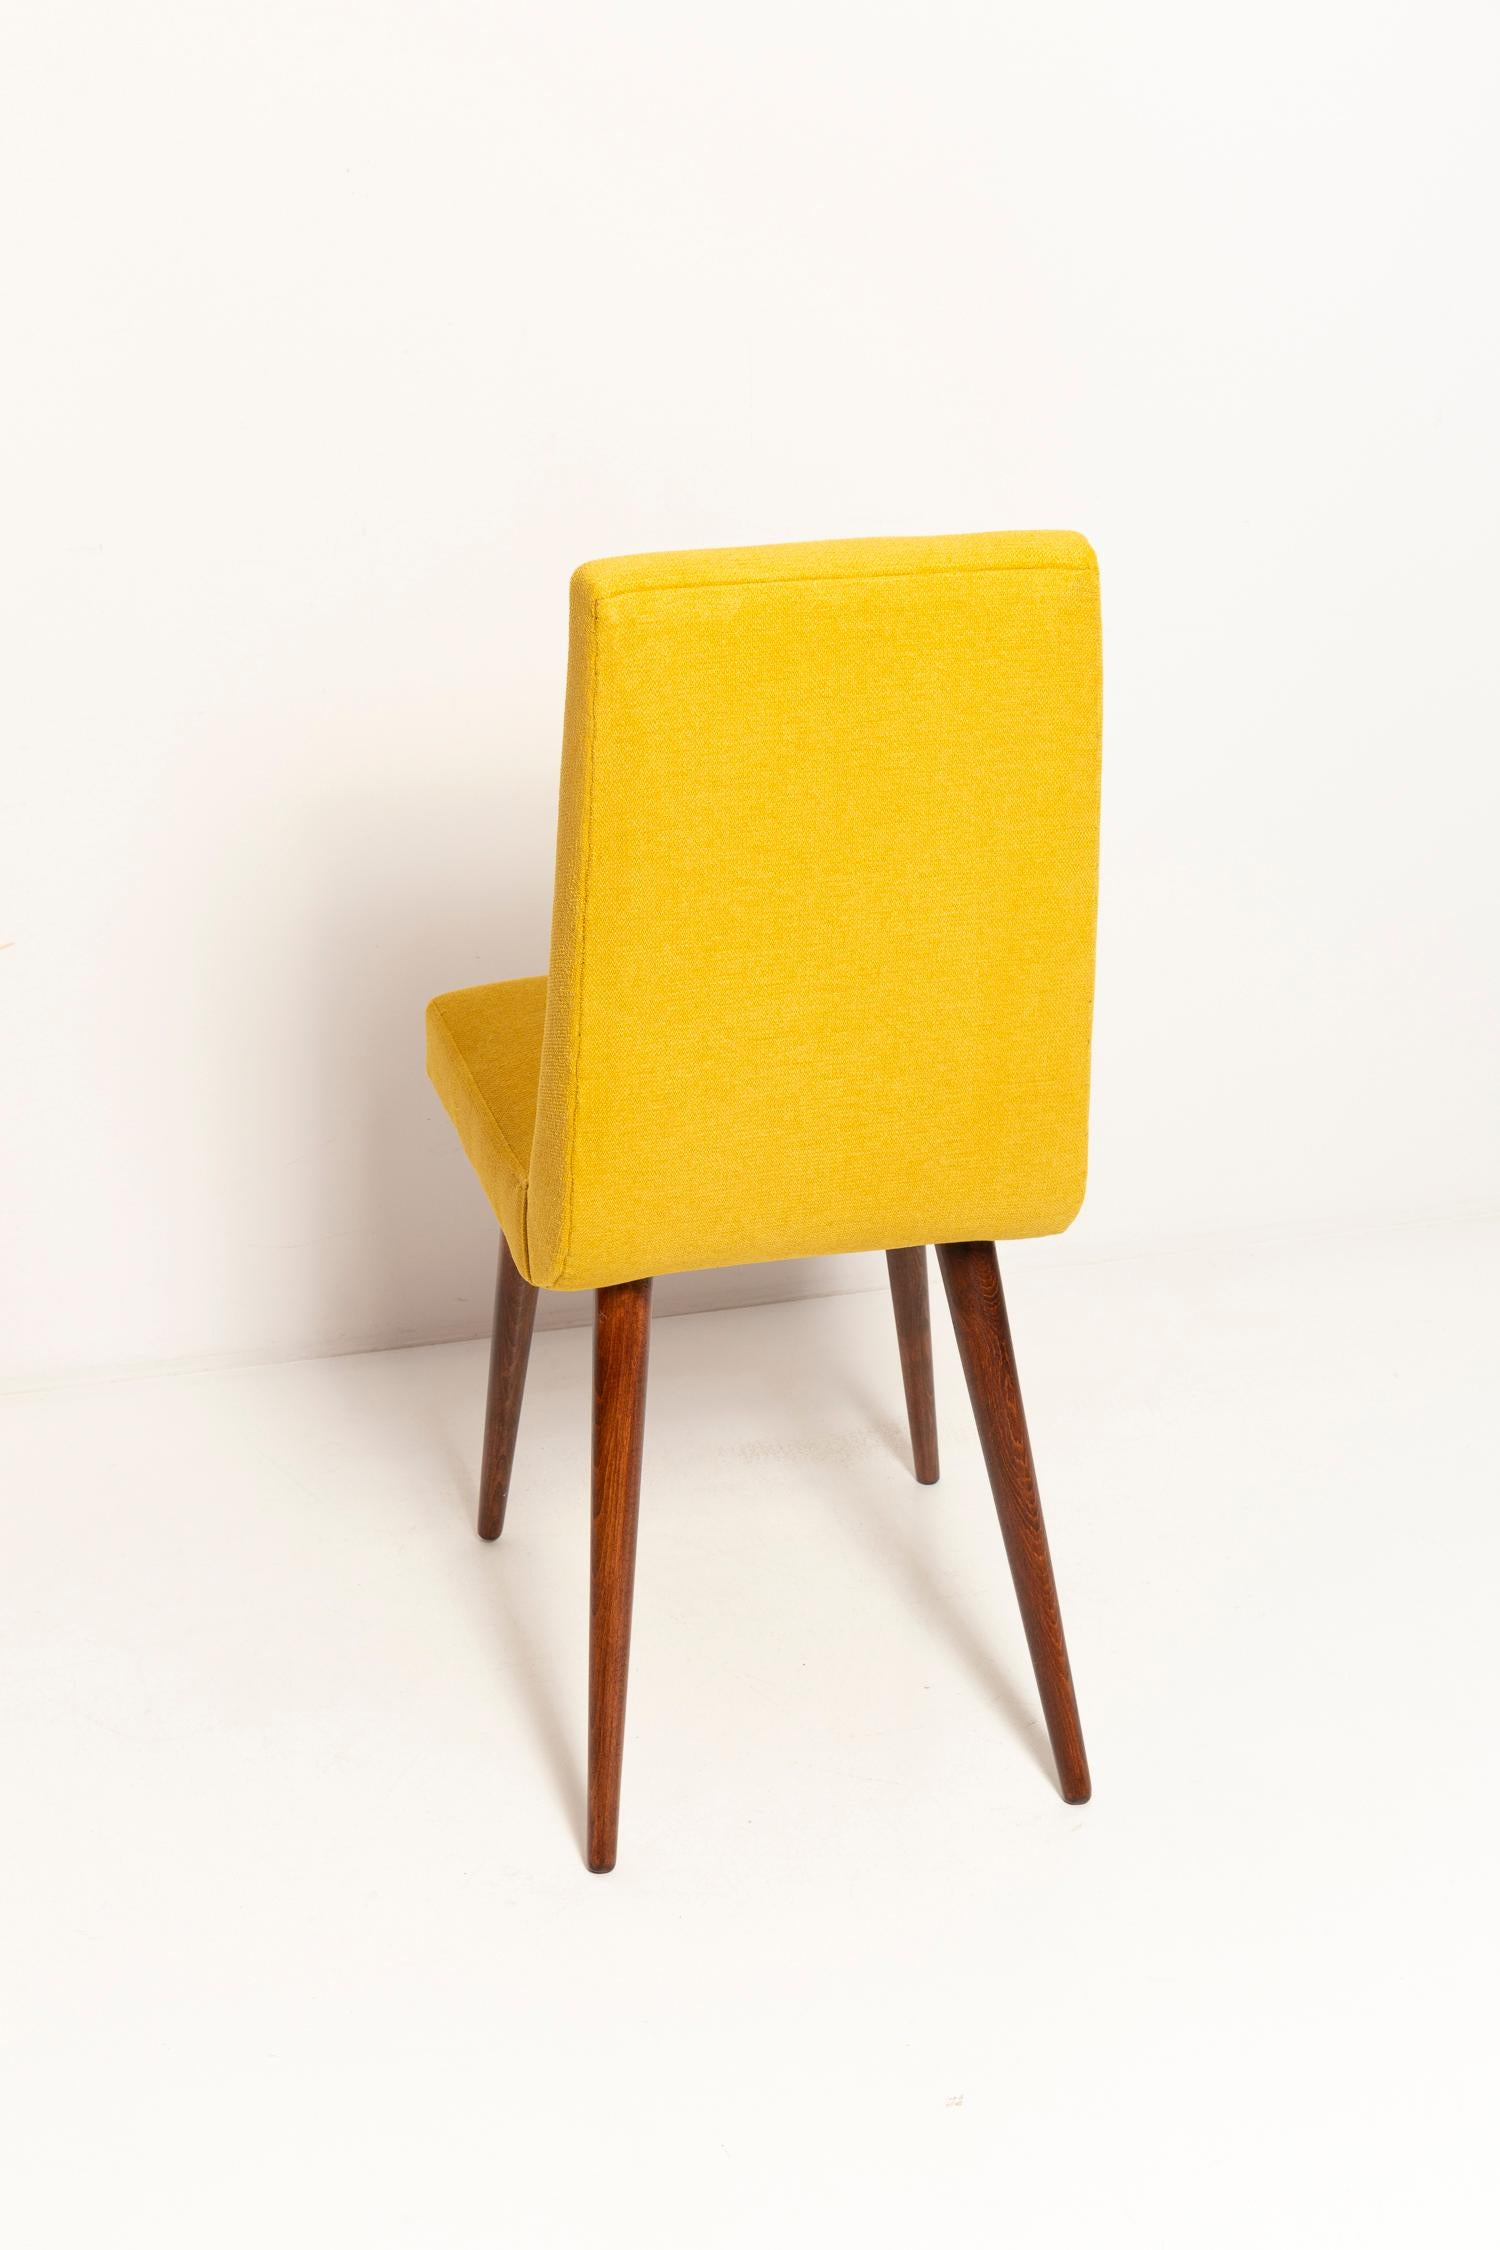 Set of Ten Midcentury Mustard Yellow Wool Chairs, Rajmund Halas Europe, 1960s For Sale 3